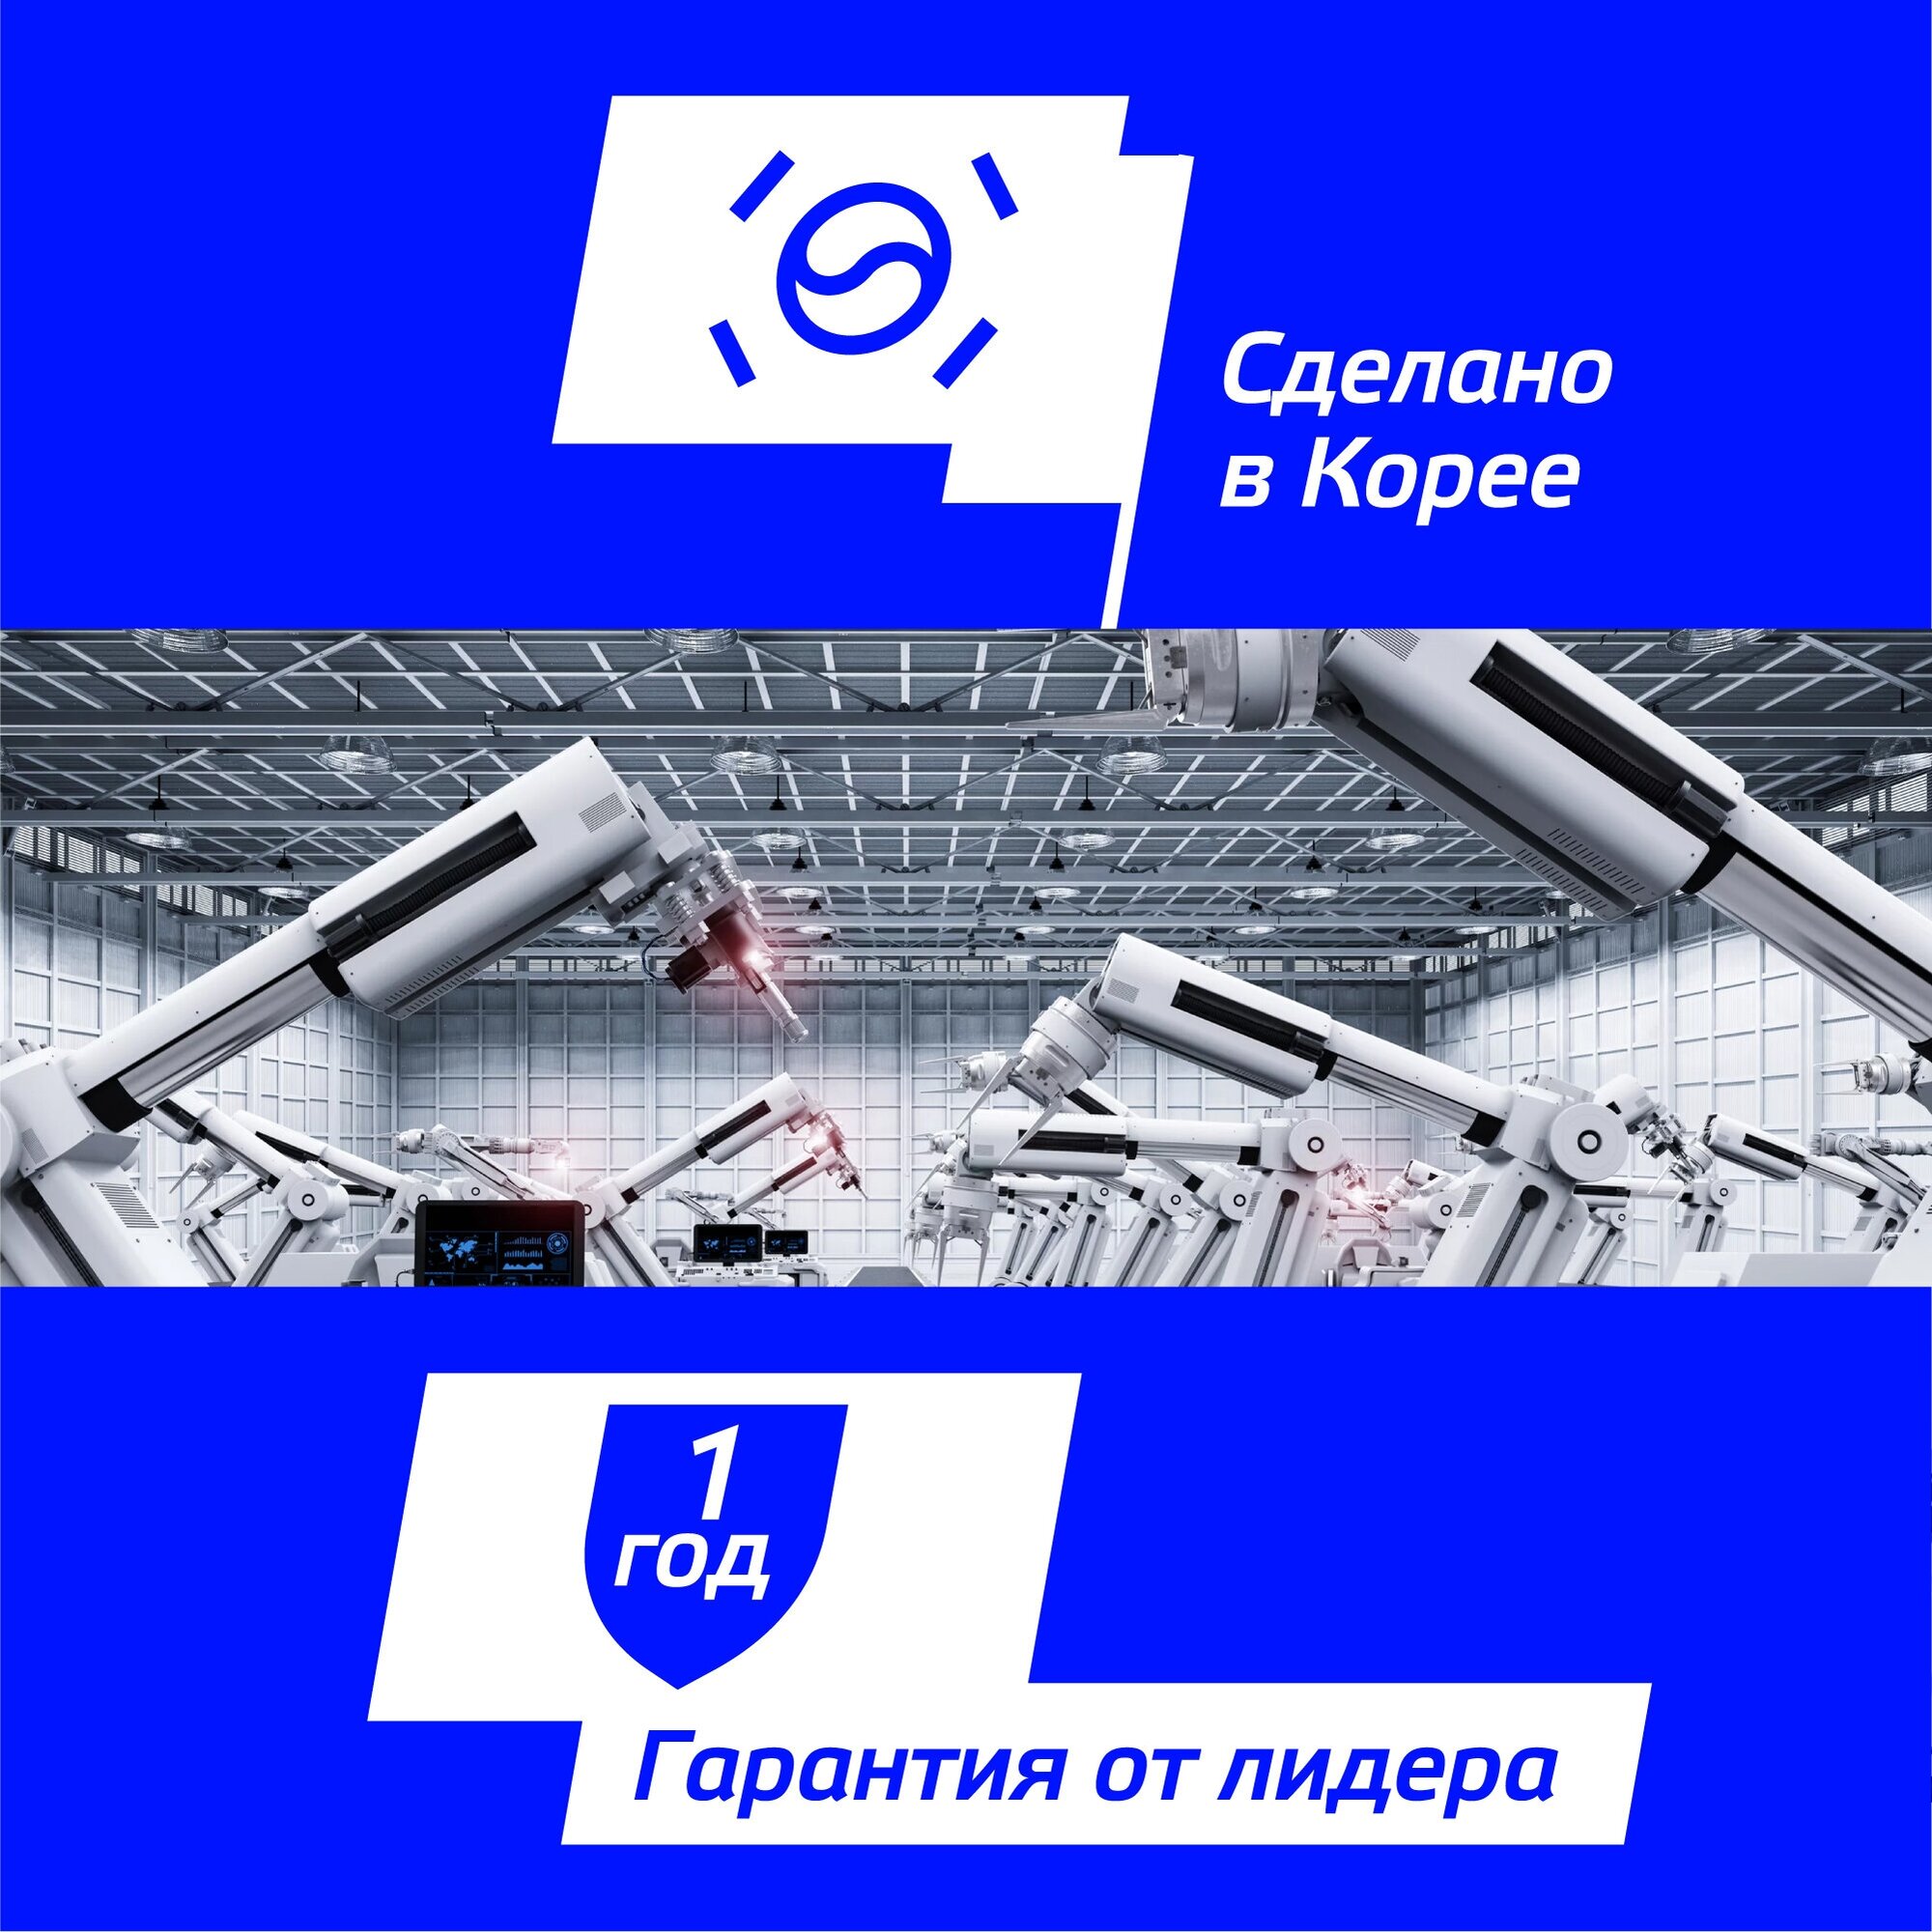 Радар-детектор SilverStone F1 Sochi PRO